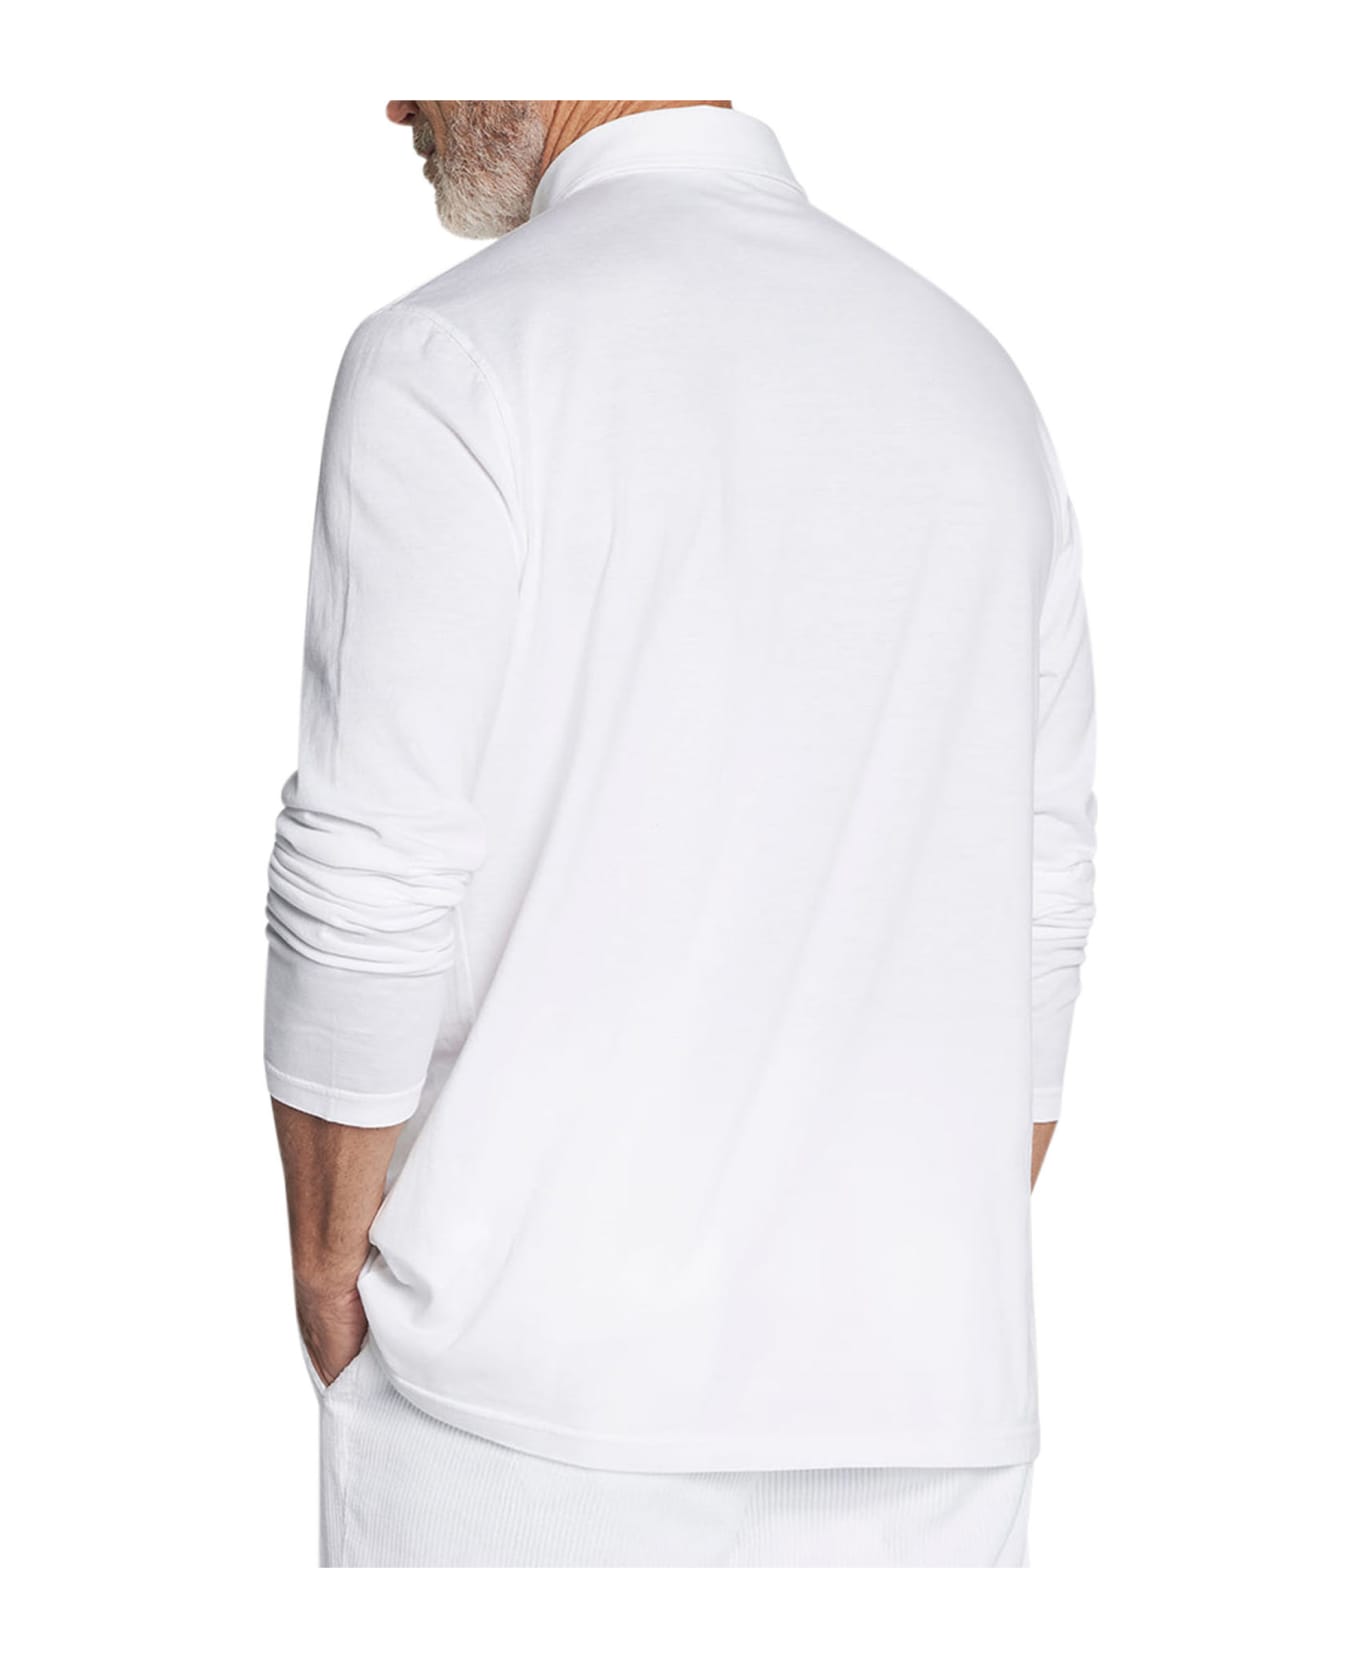 Kiton Jersey Poloshirt Cotton - WHITE